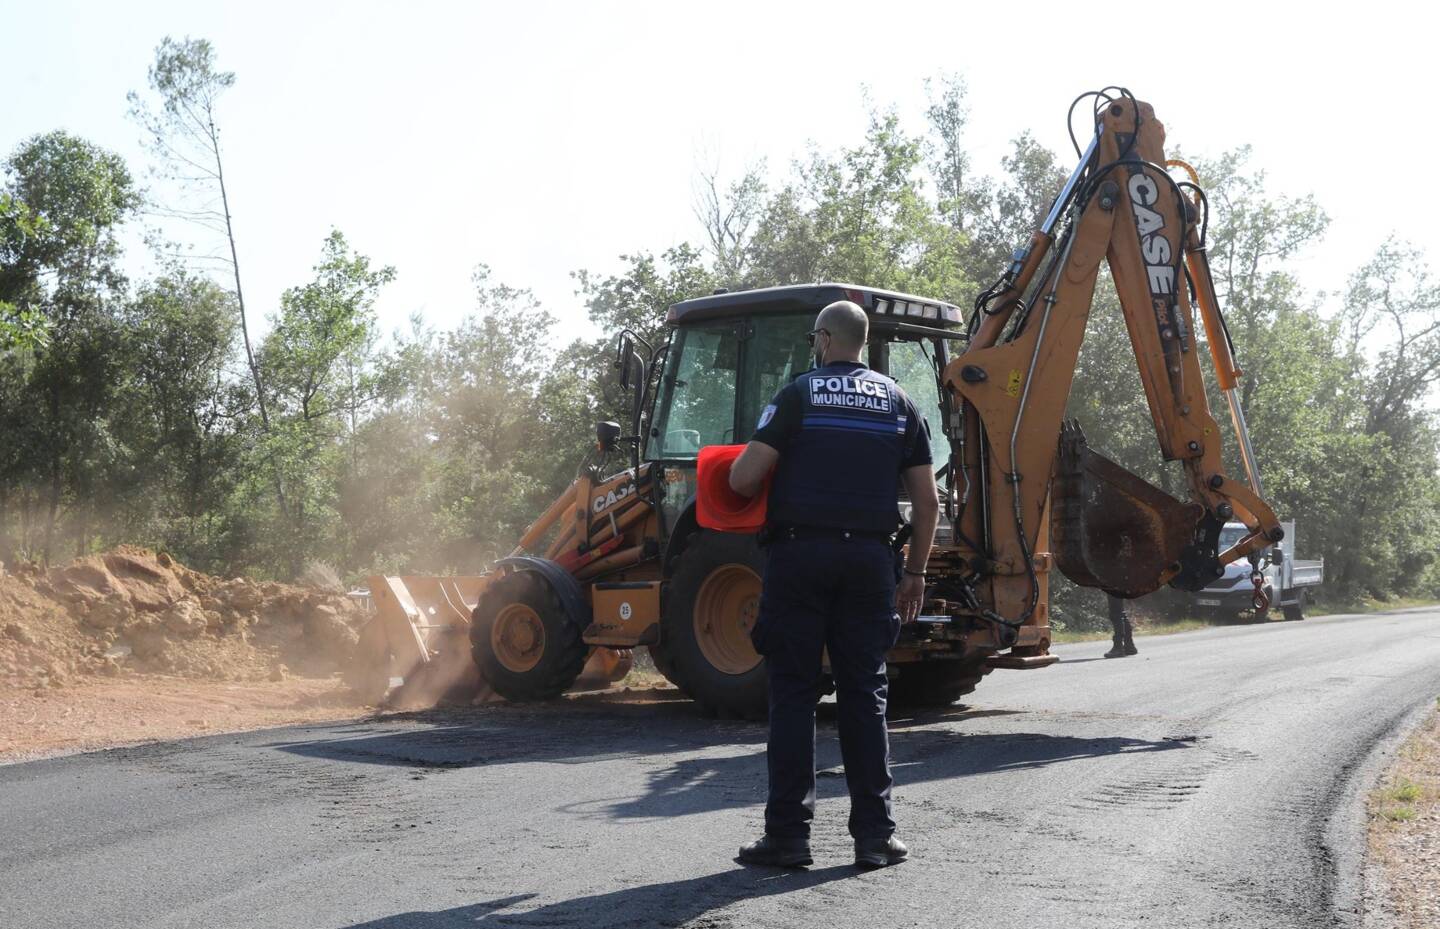 La police municipale est intervenue à l’aide de bulldozers pour éviter l’extension du camp.